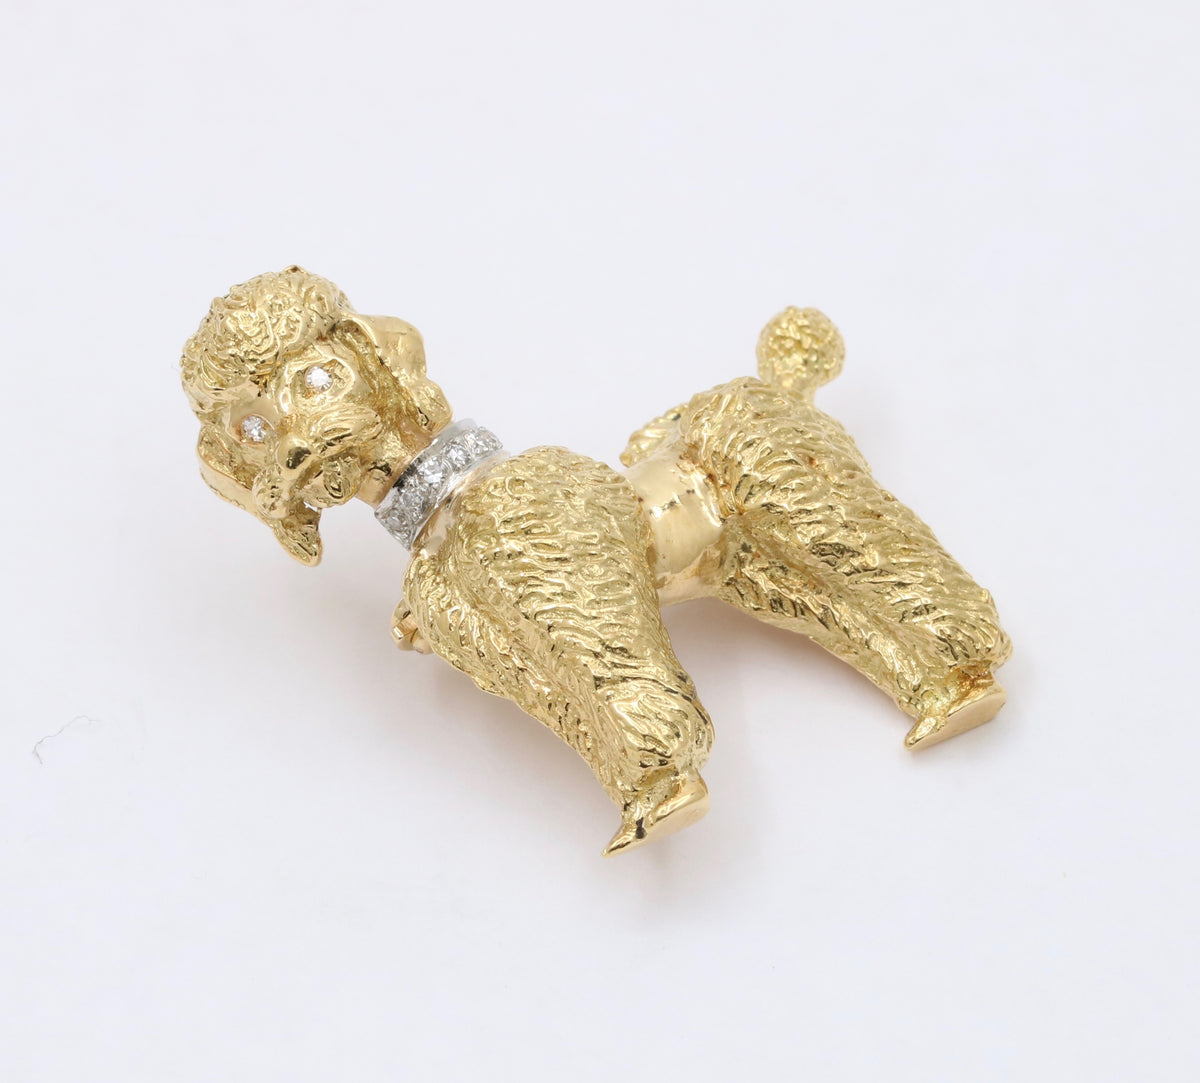 Vintage 18K Gold and Diamond Poodle Brooch, 16.7 Gram Dog Pin